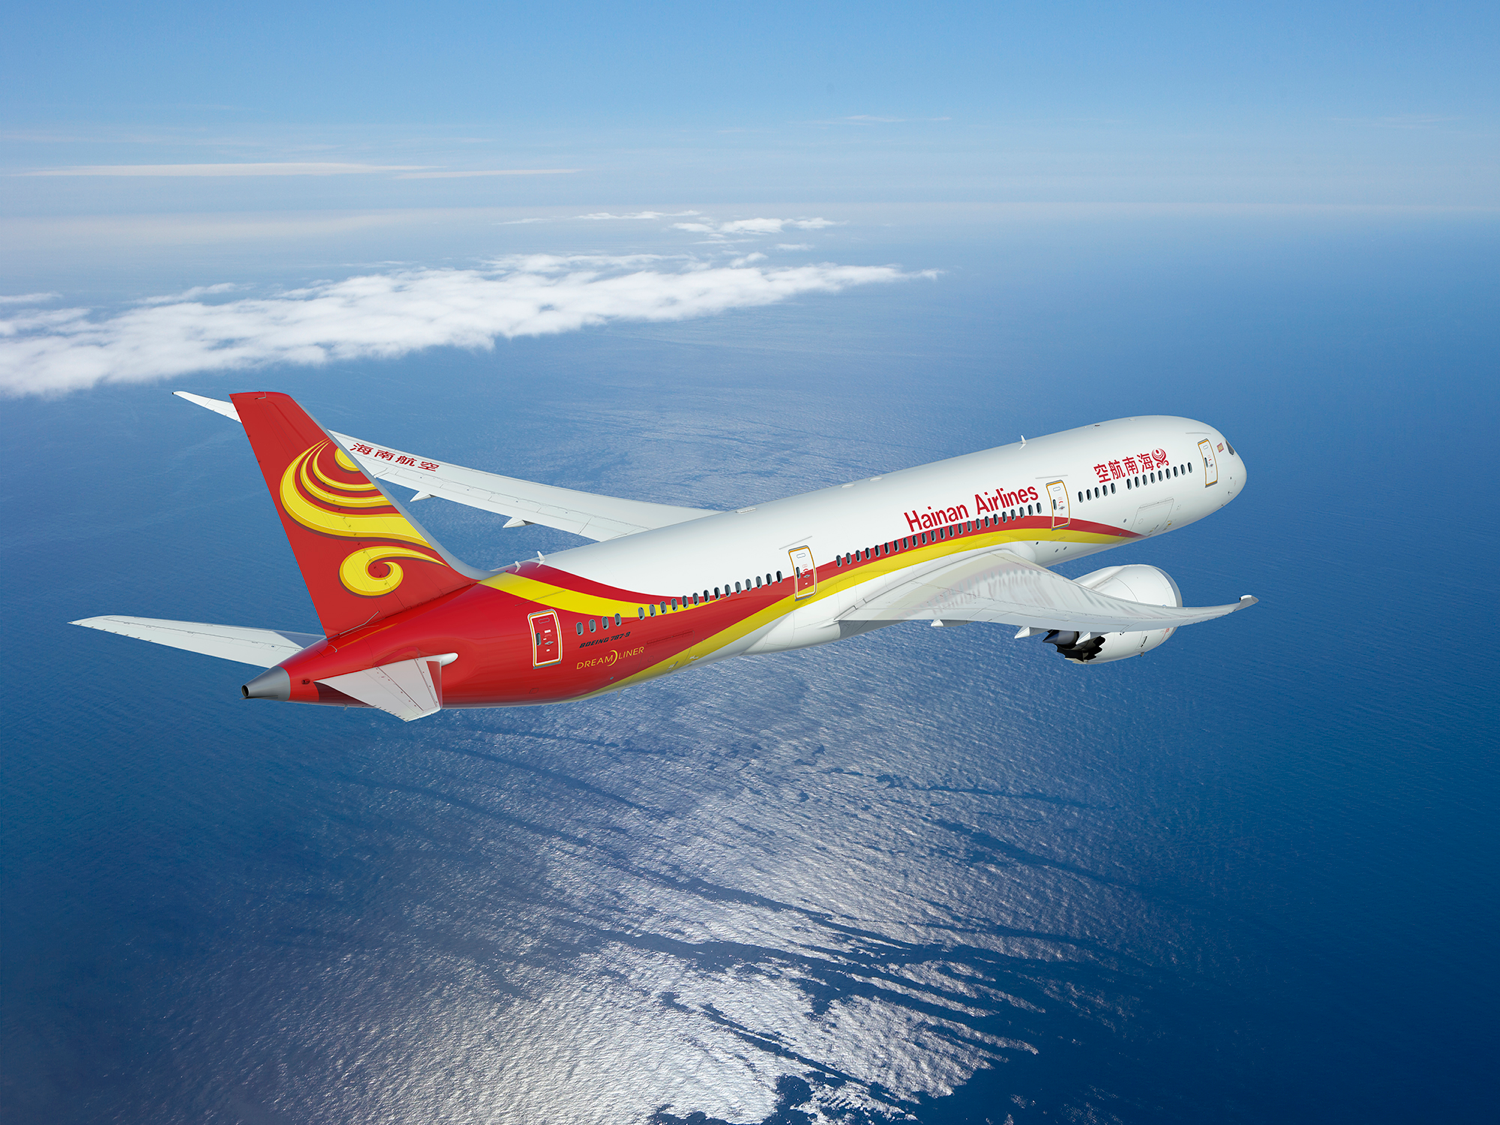 Hainan Airlines Dreamliner